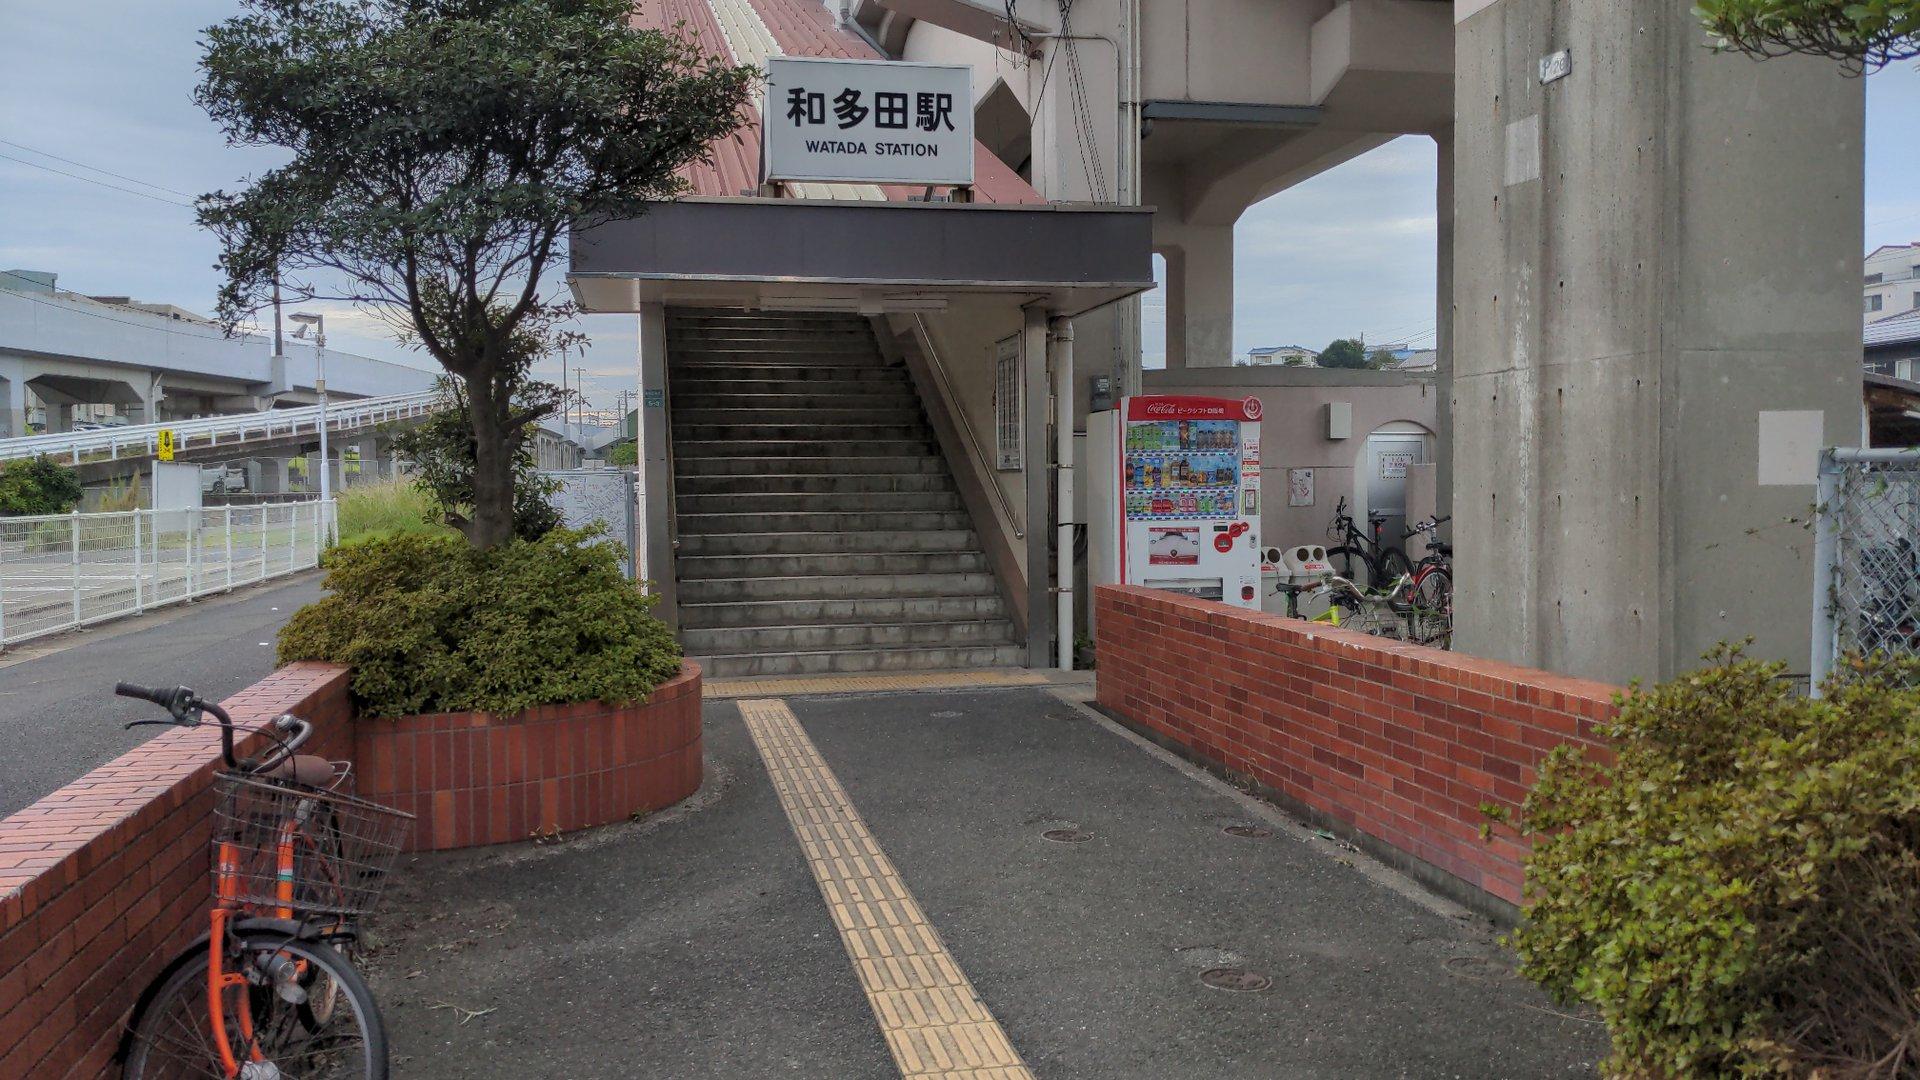 Watada Station (和多田駅（わただ）)